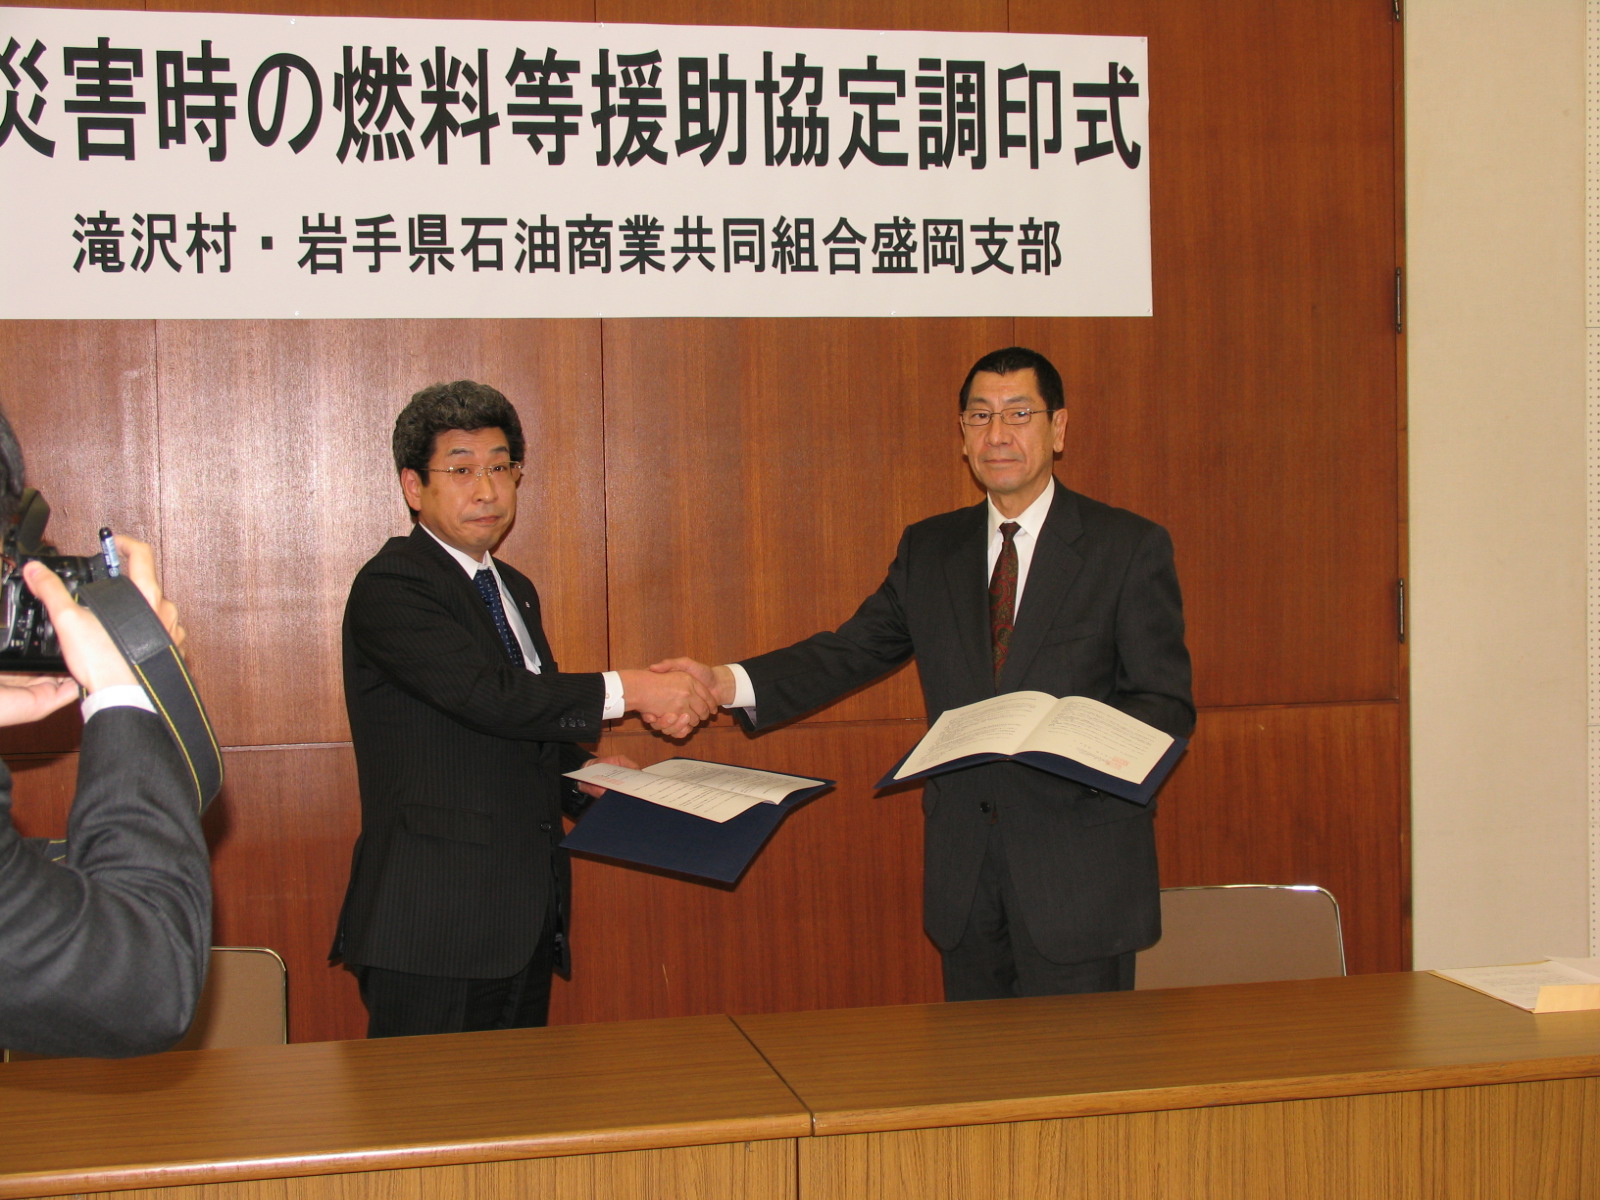 滝沢村と災害時燃料油等の供給協定締結